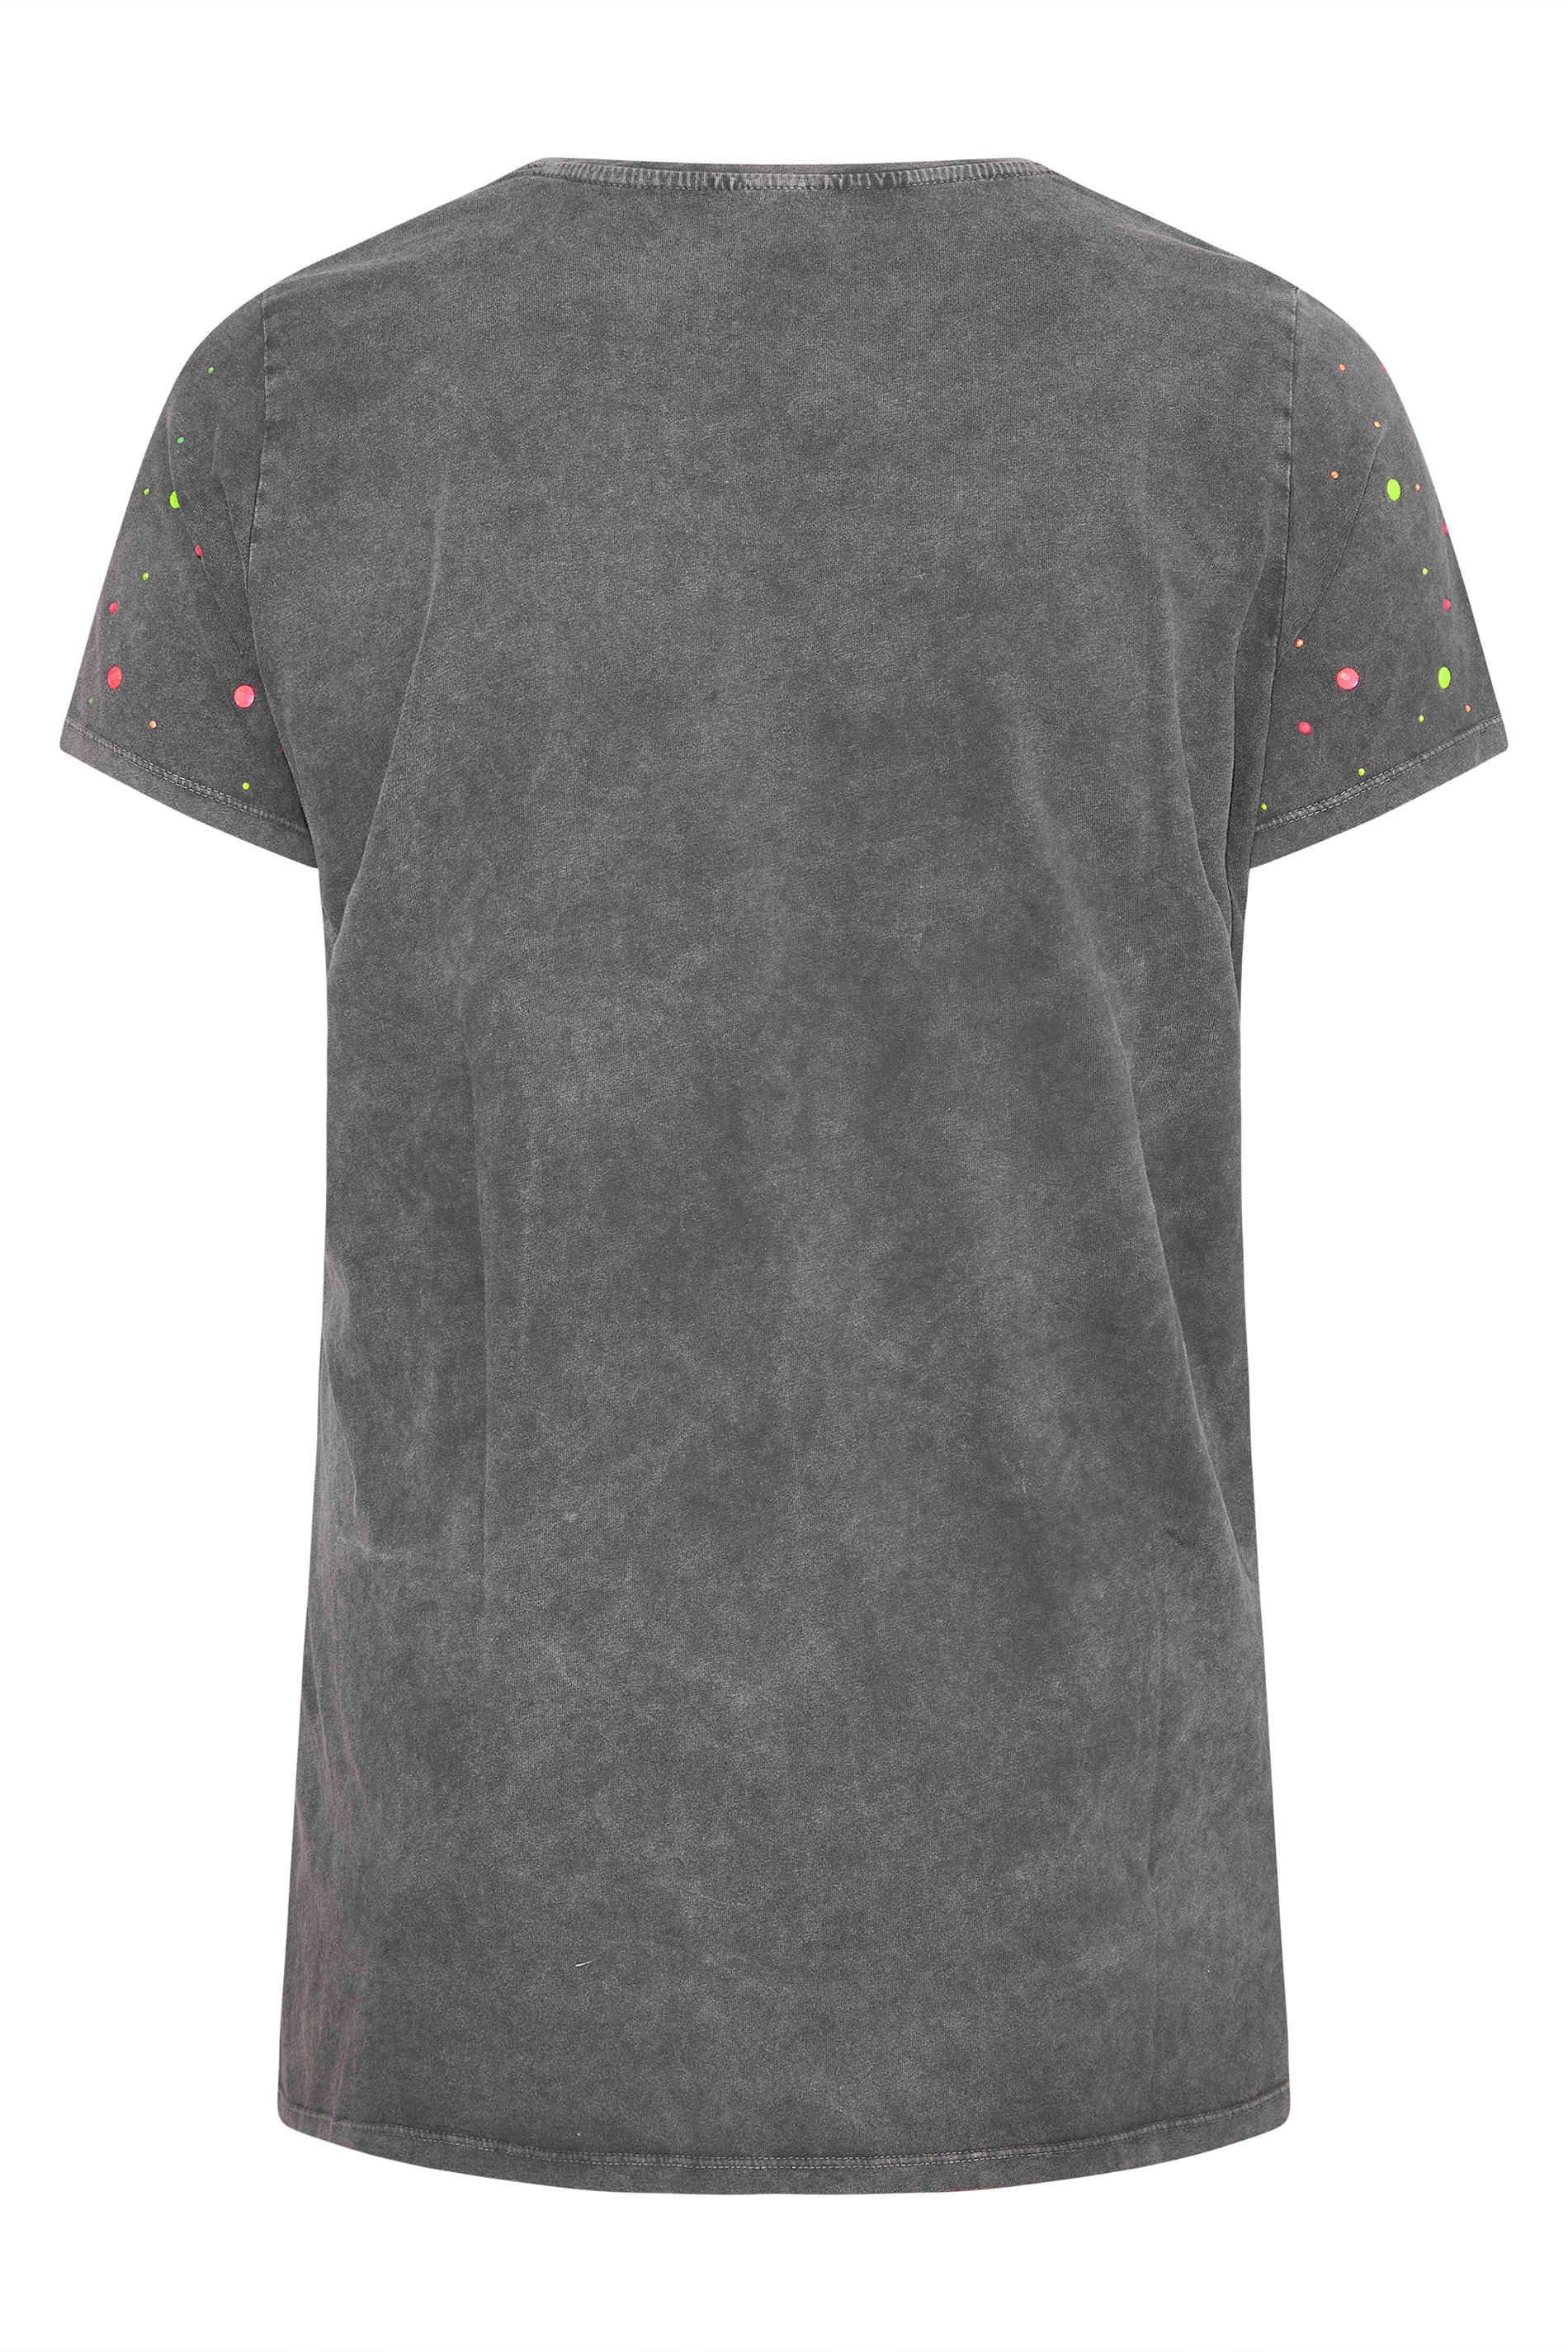 Grande taille  Tops Grande taille  T-Shirts | T-Shirt Gris Délavé Empiècements Cloutés Rose & Vert - ZL76346